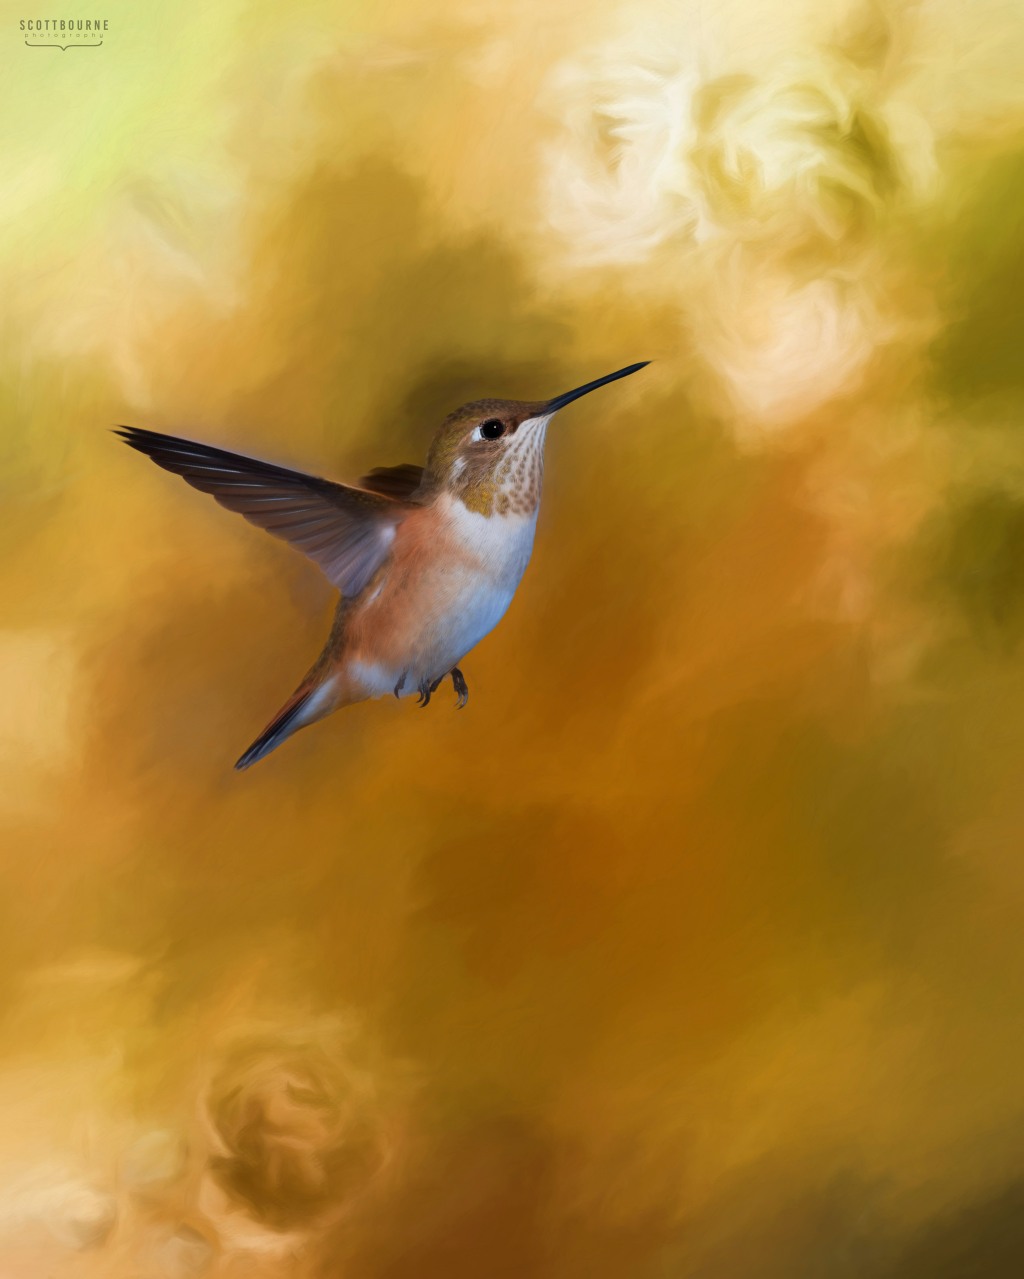 Hummingbird photo painting by Scott Bourne